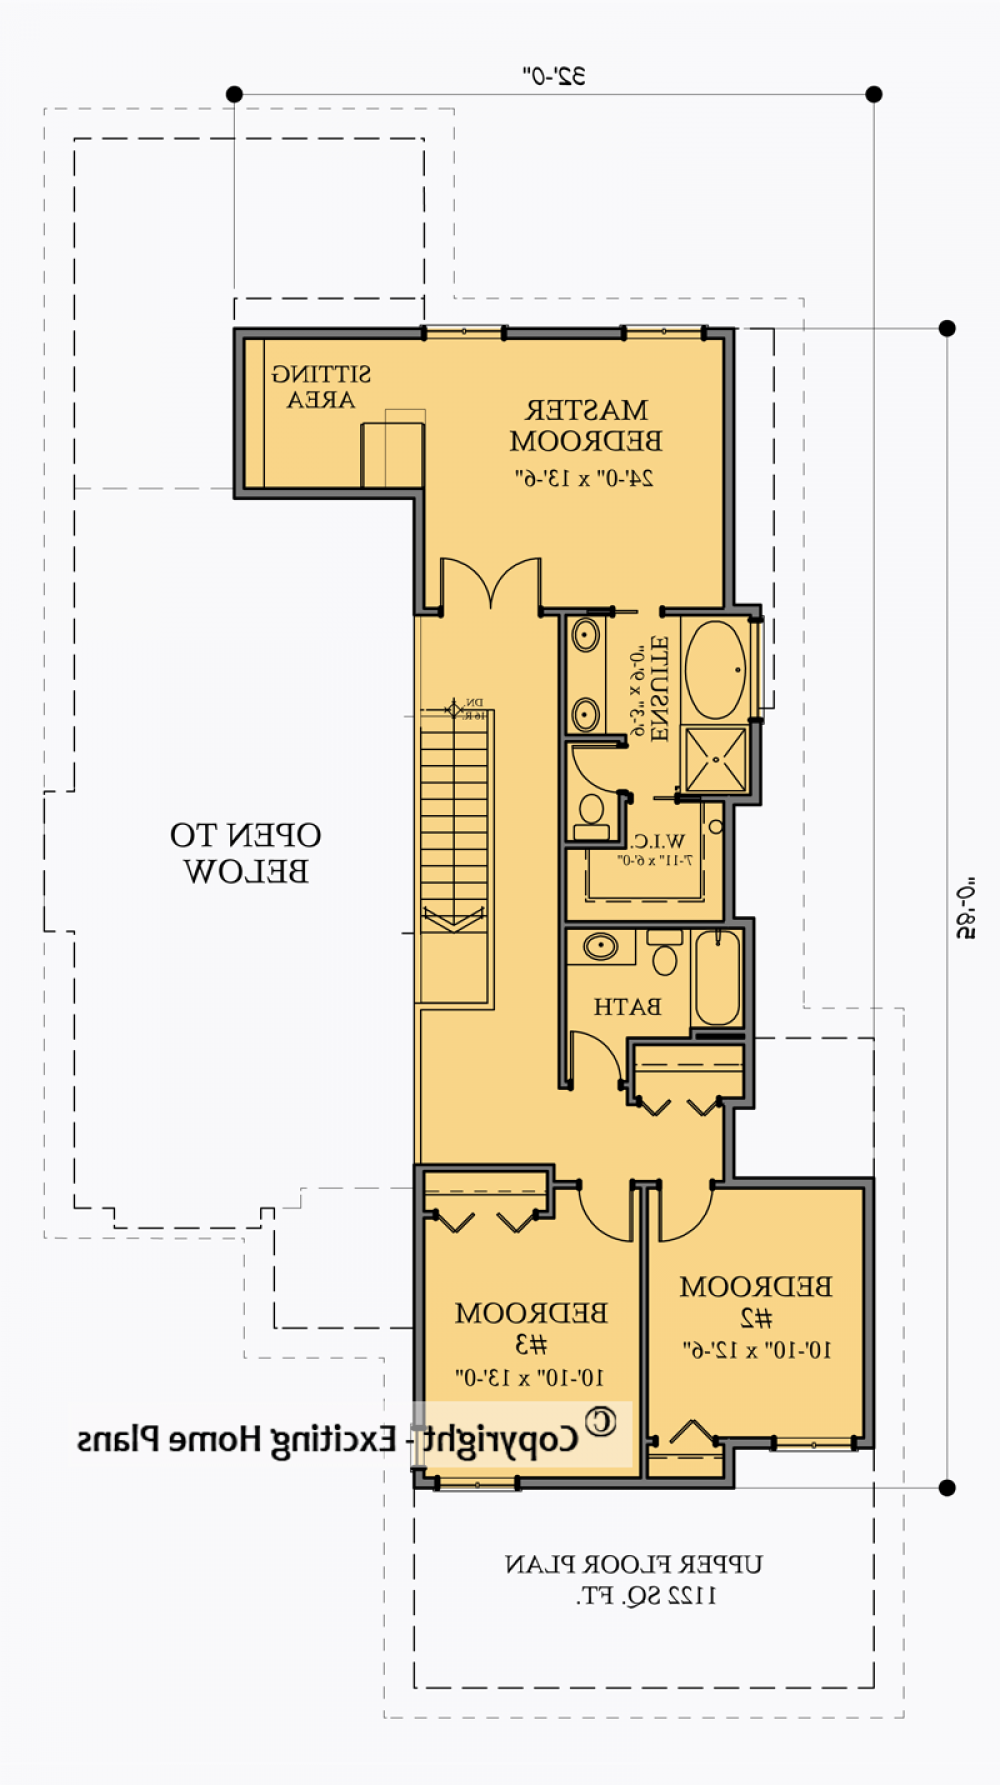 House Plan E1007-10 Upper Floor Plan REVERSE